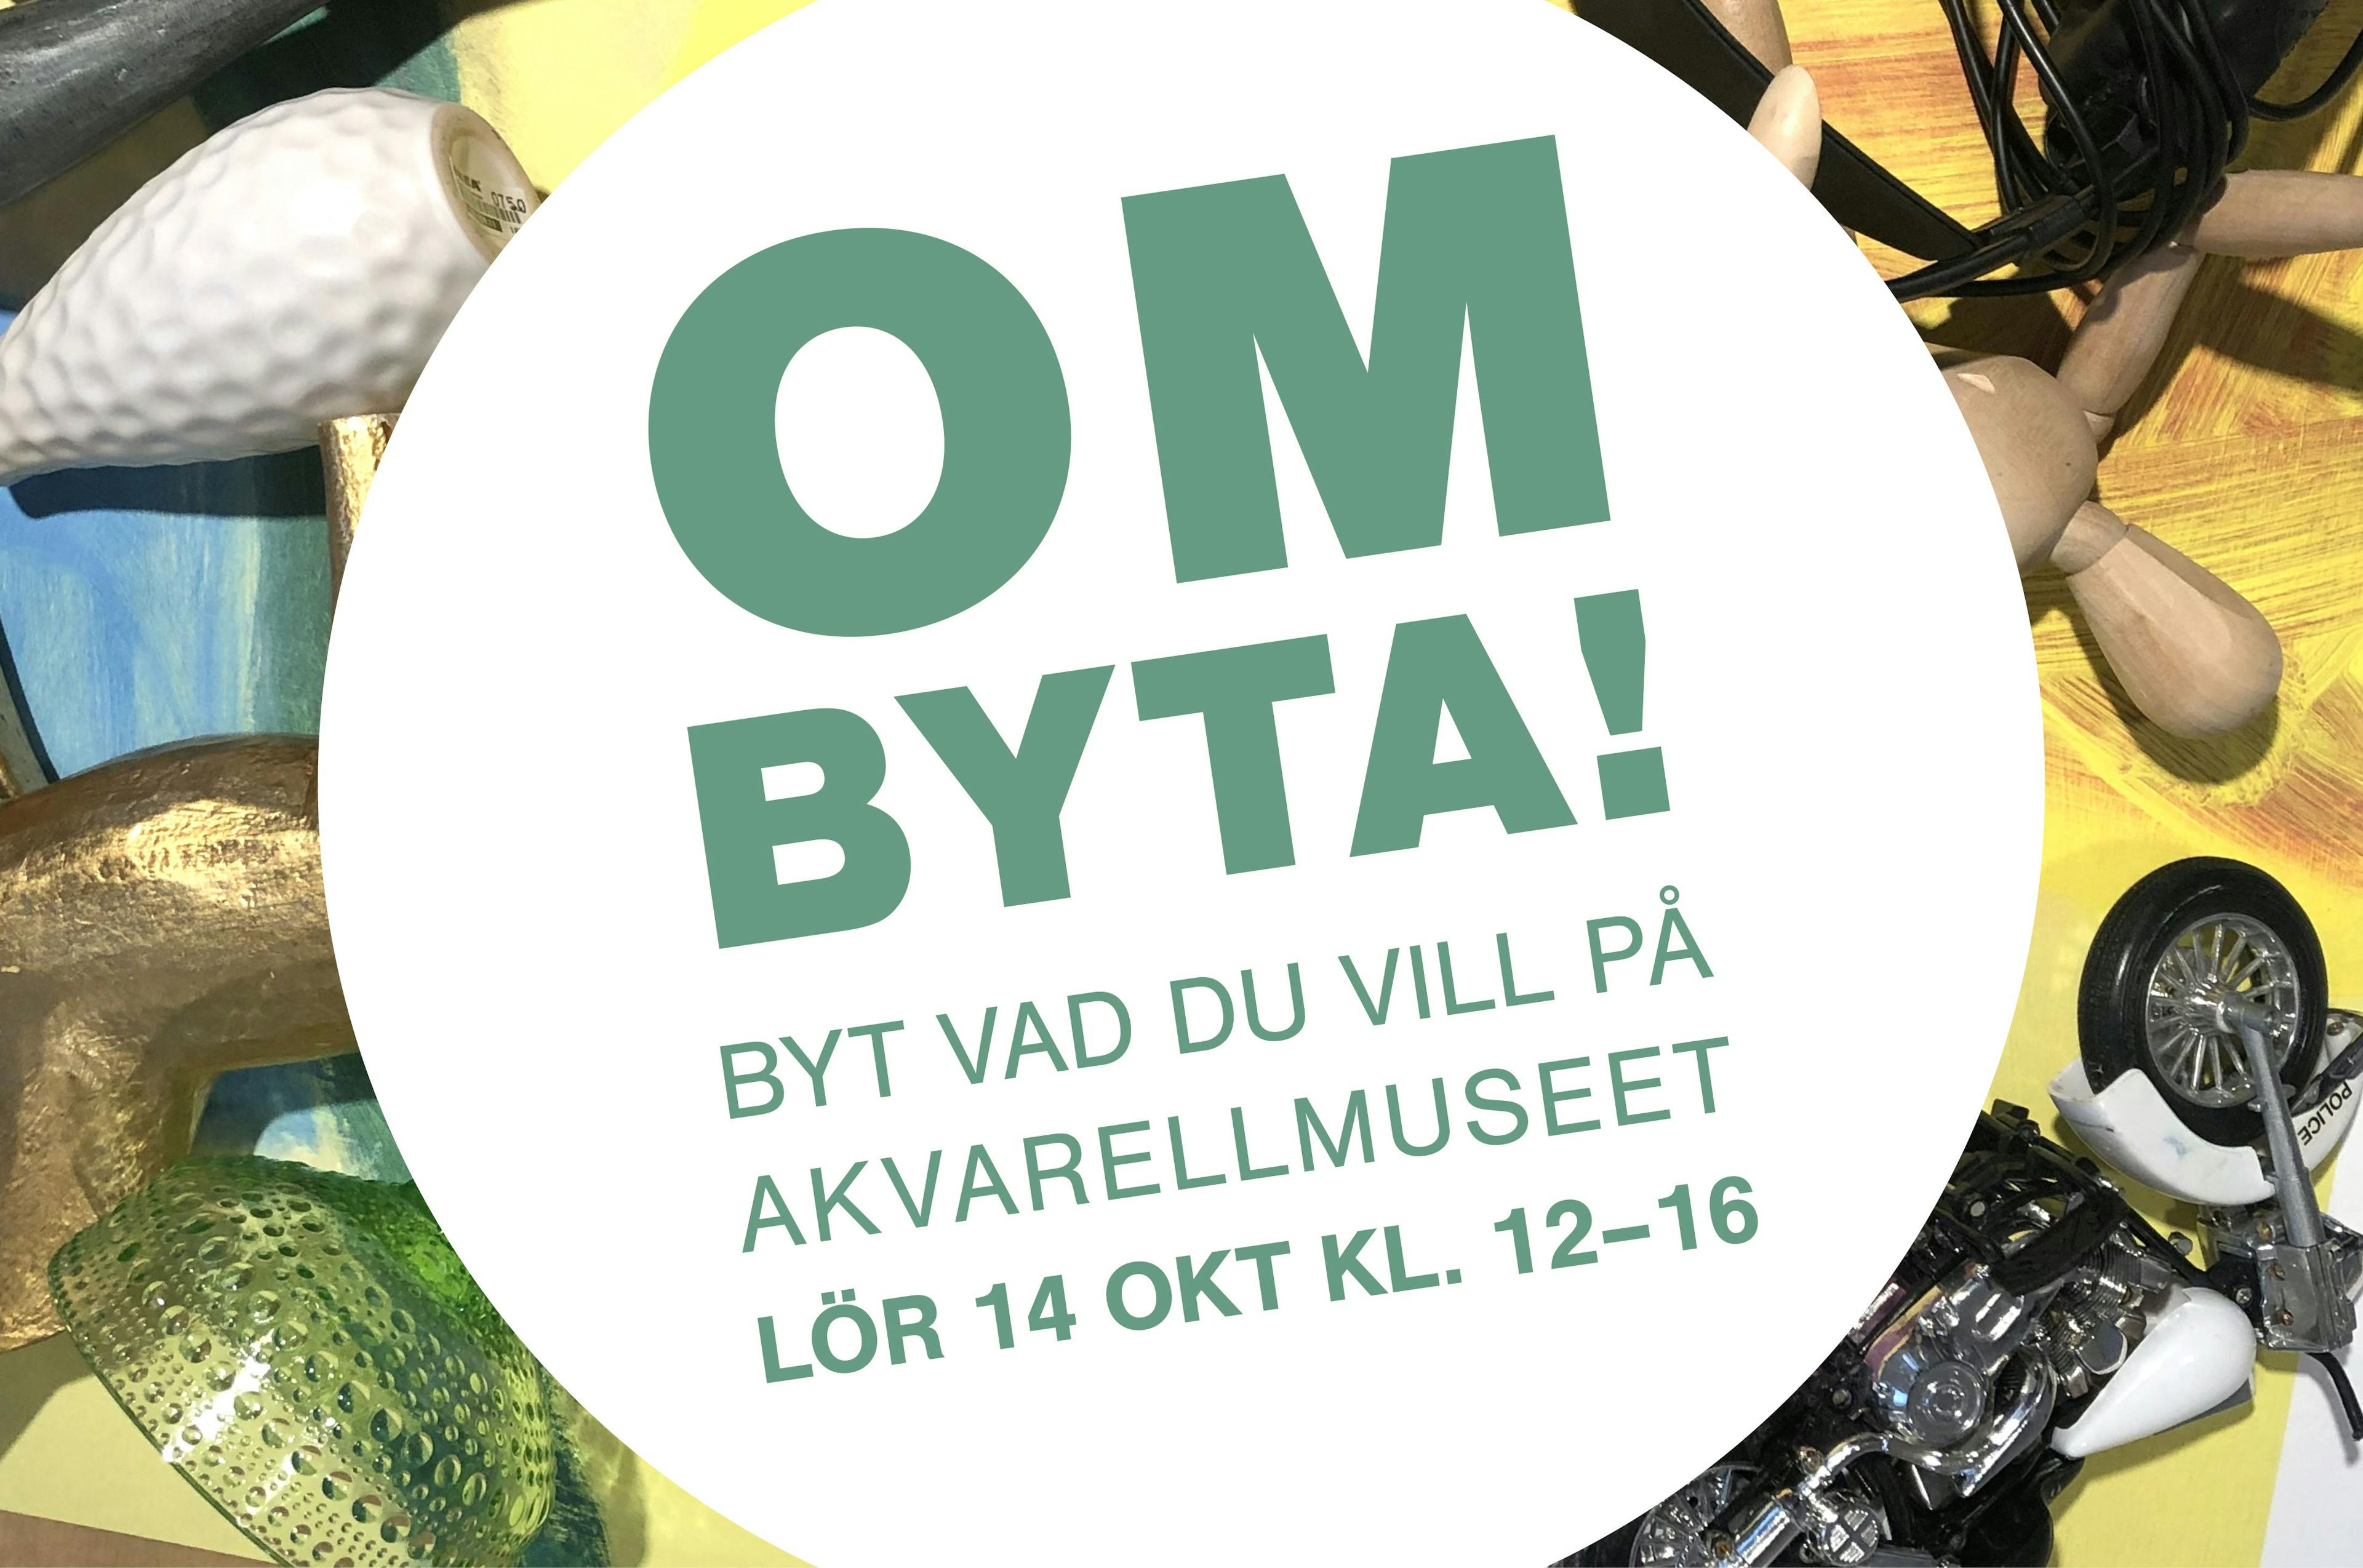 Text: OmByta - Byt vad du vill på Akvarellmuseet 14 oktober